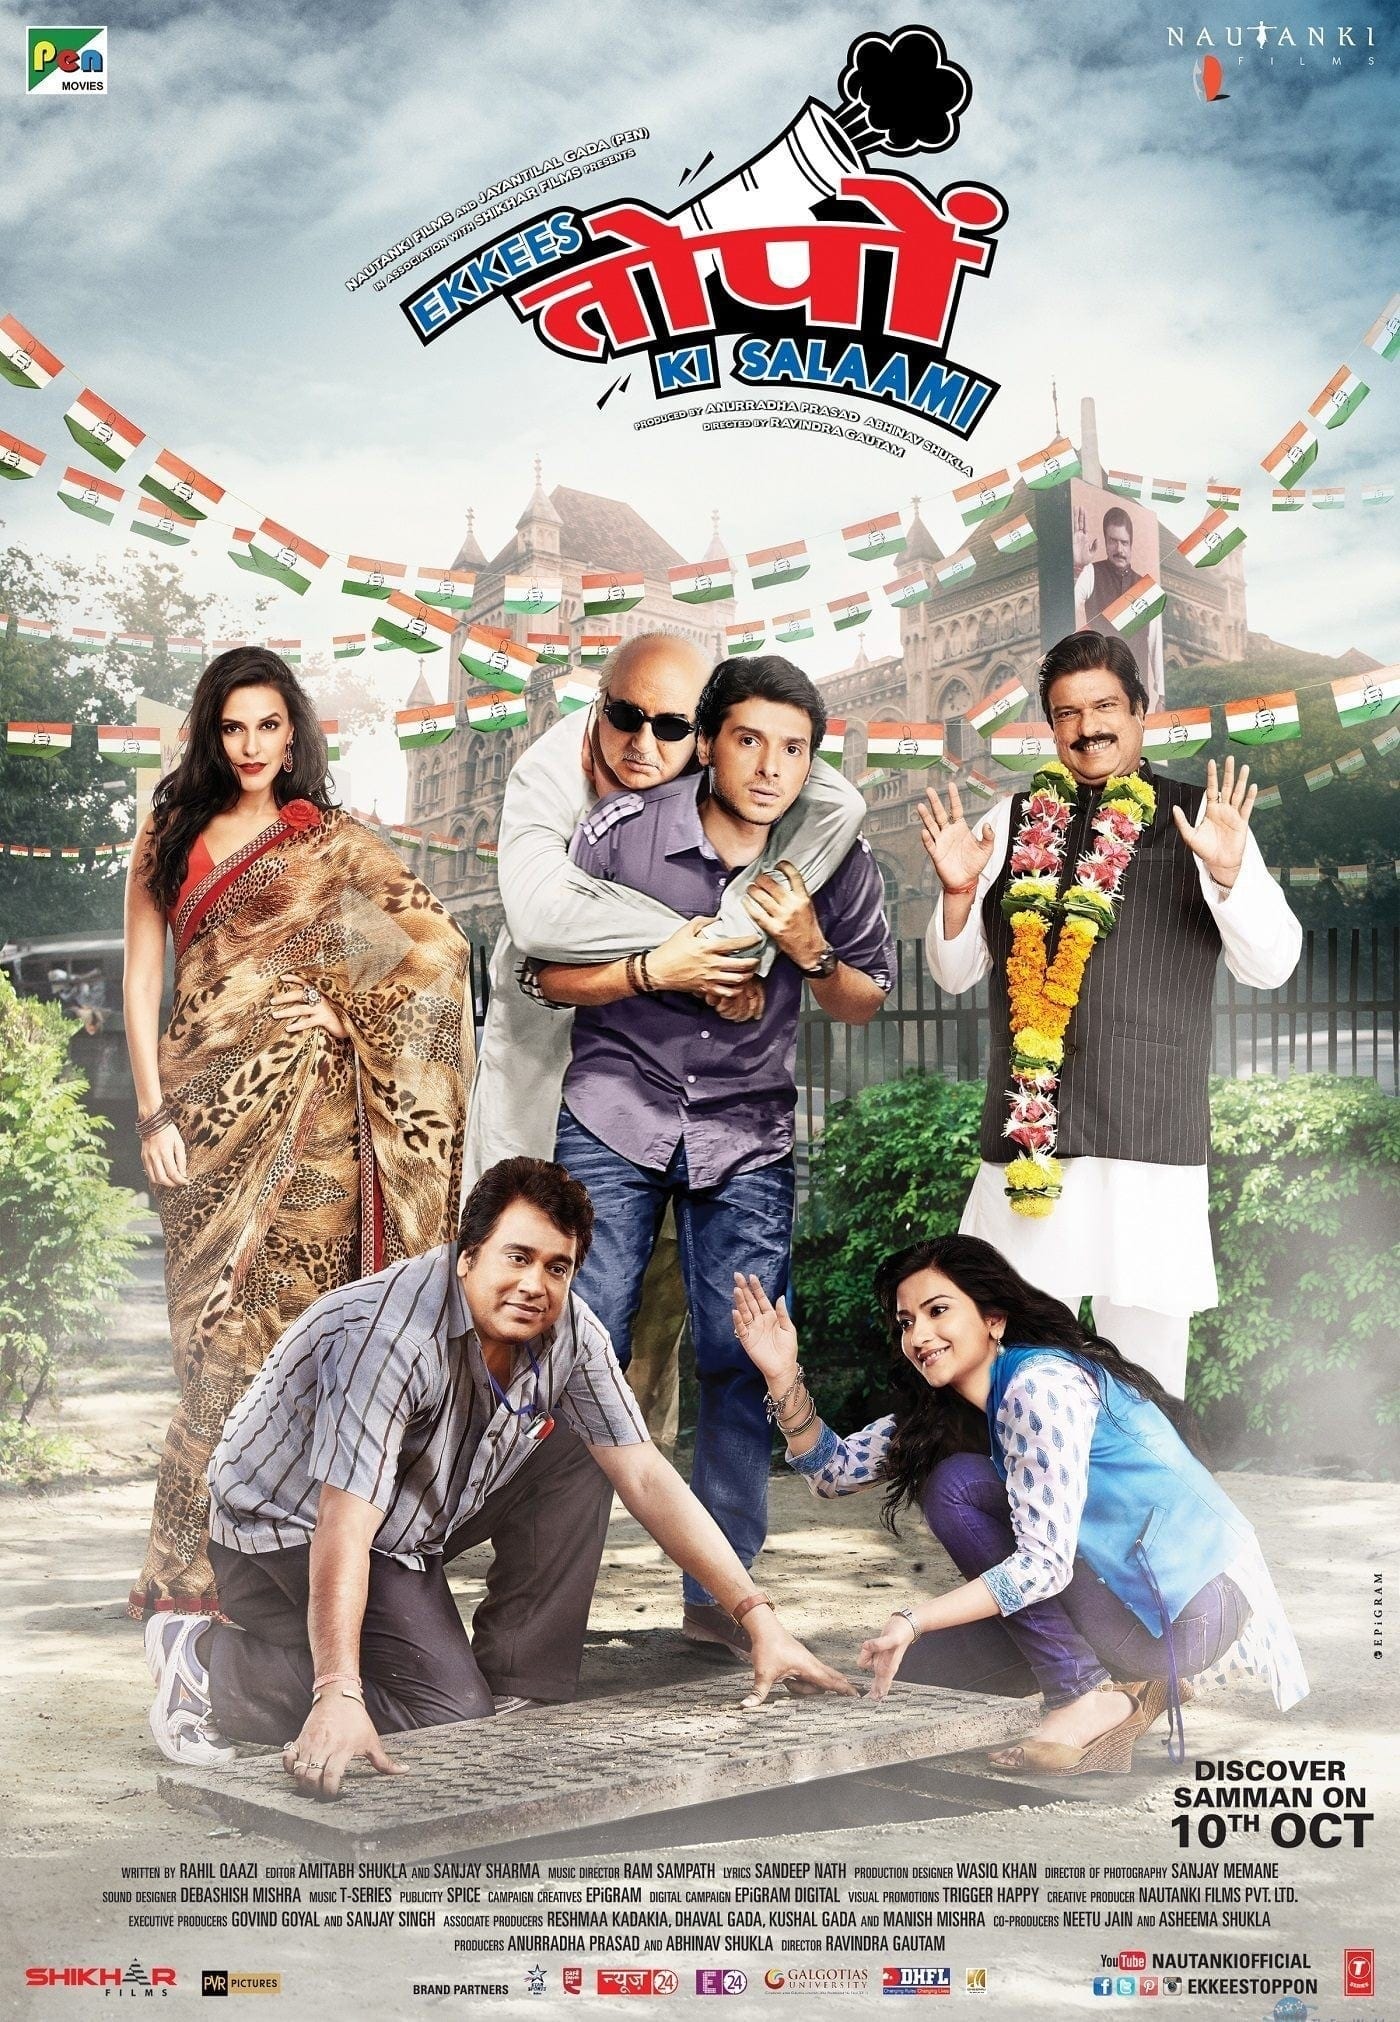 Poster for the movie "Ekkees Toppon Ki Salaami"